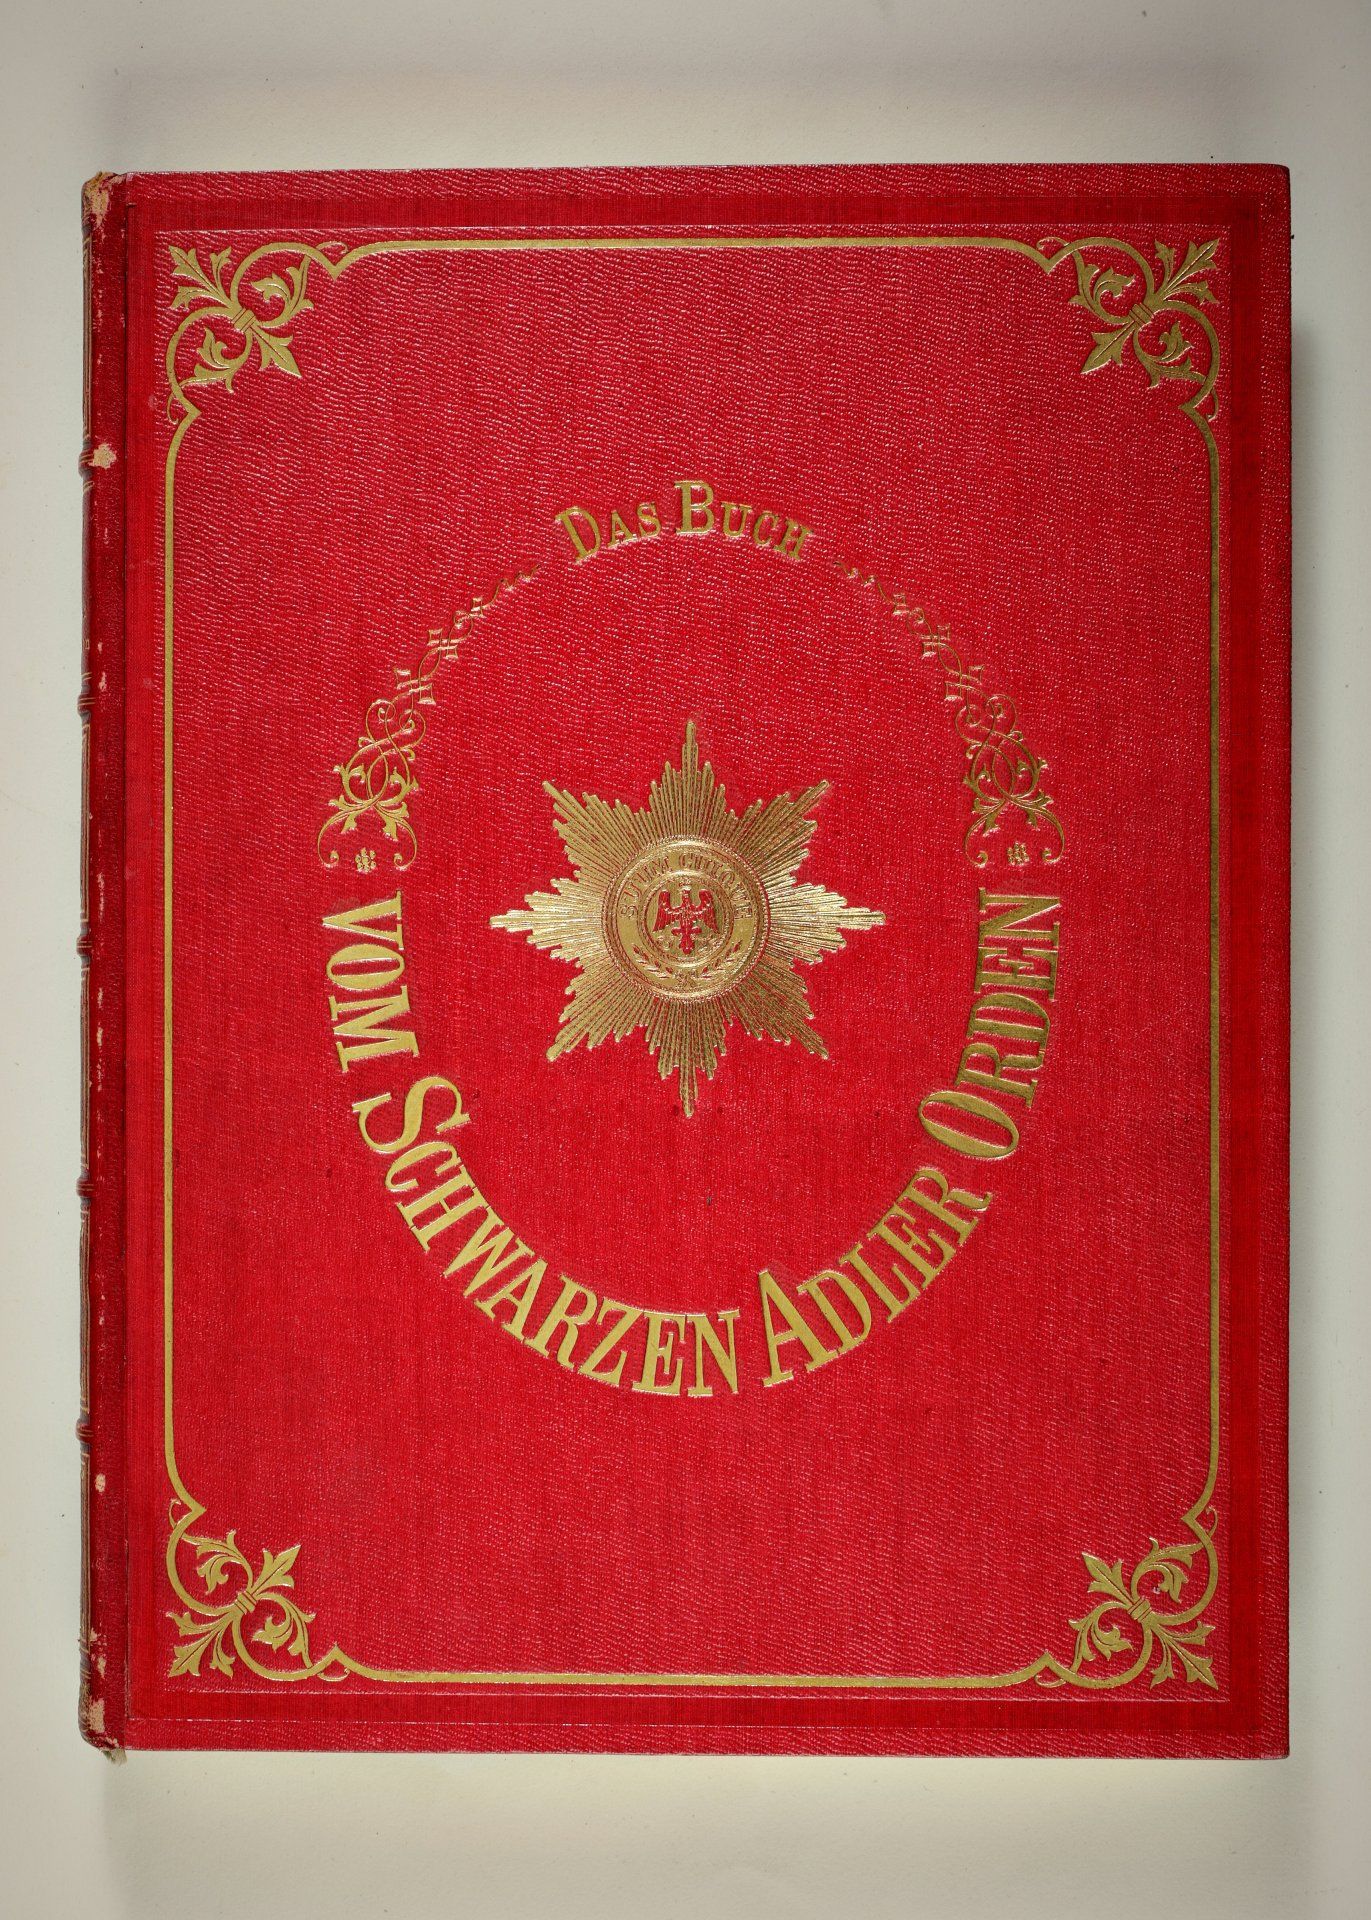 Preußen : L. Schneider - Das Buch vom Schwarzen Adler Orden, Berlin 1870.